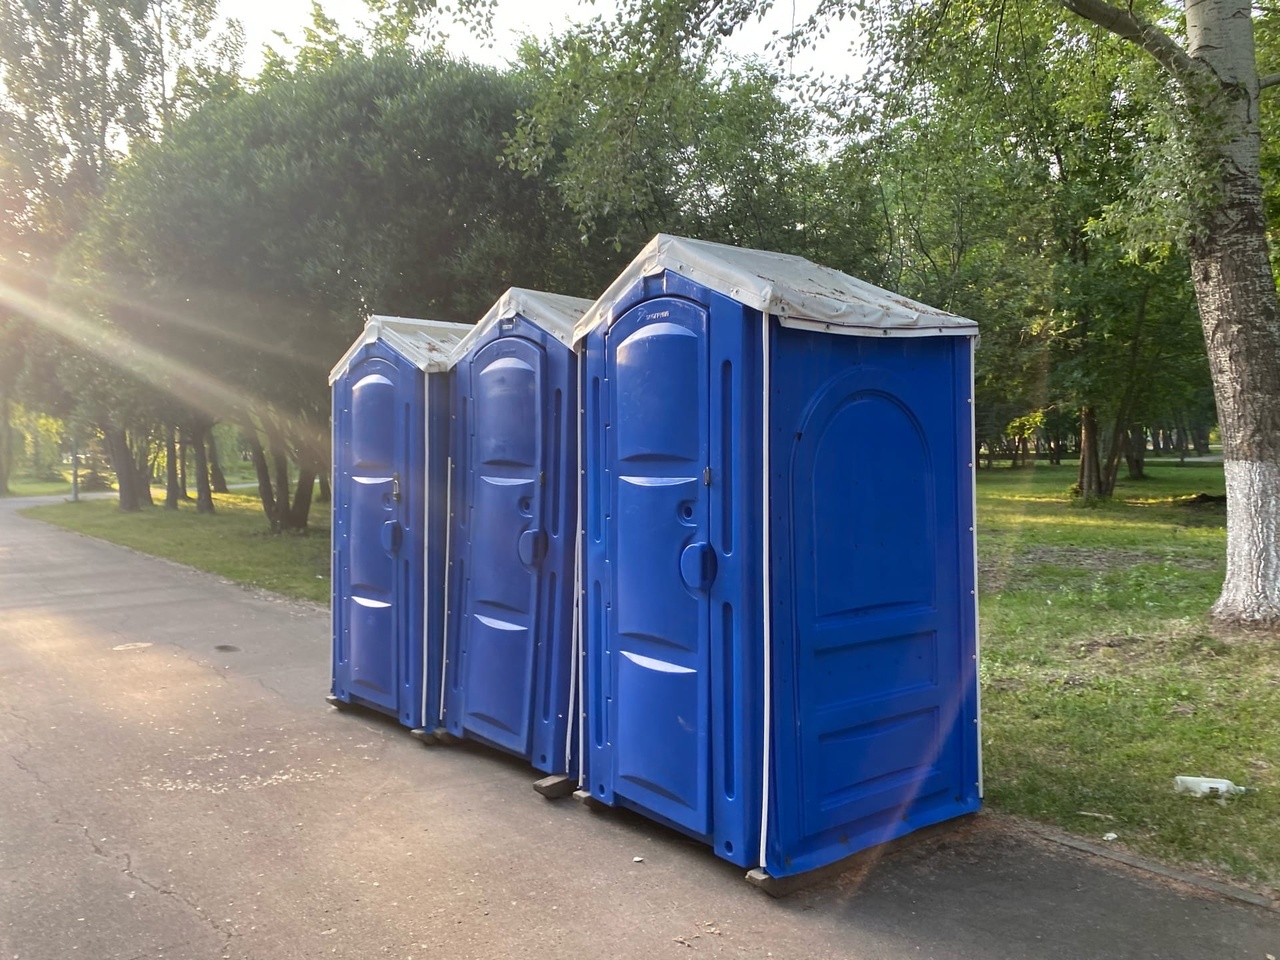  В Самаре собираются закупить 12 унитазов для обновления туалетов на набережной 